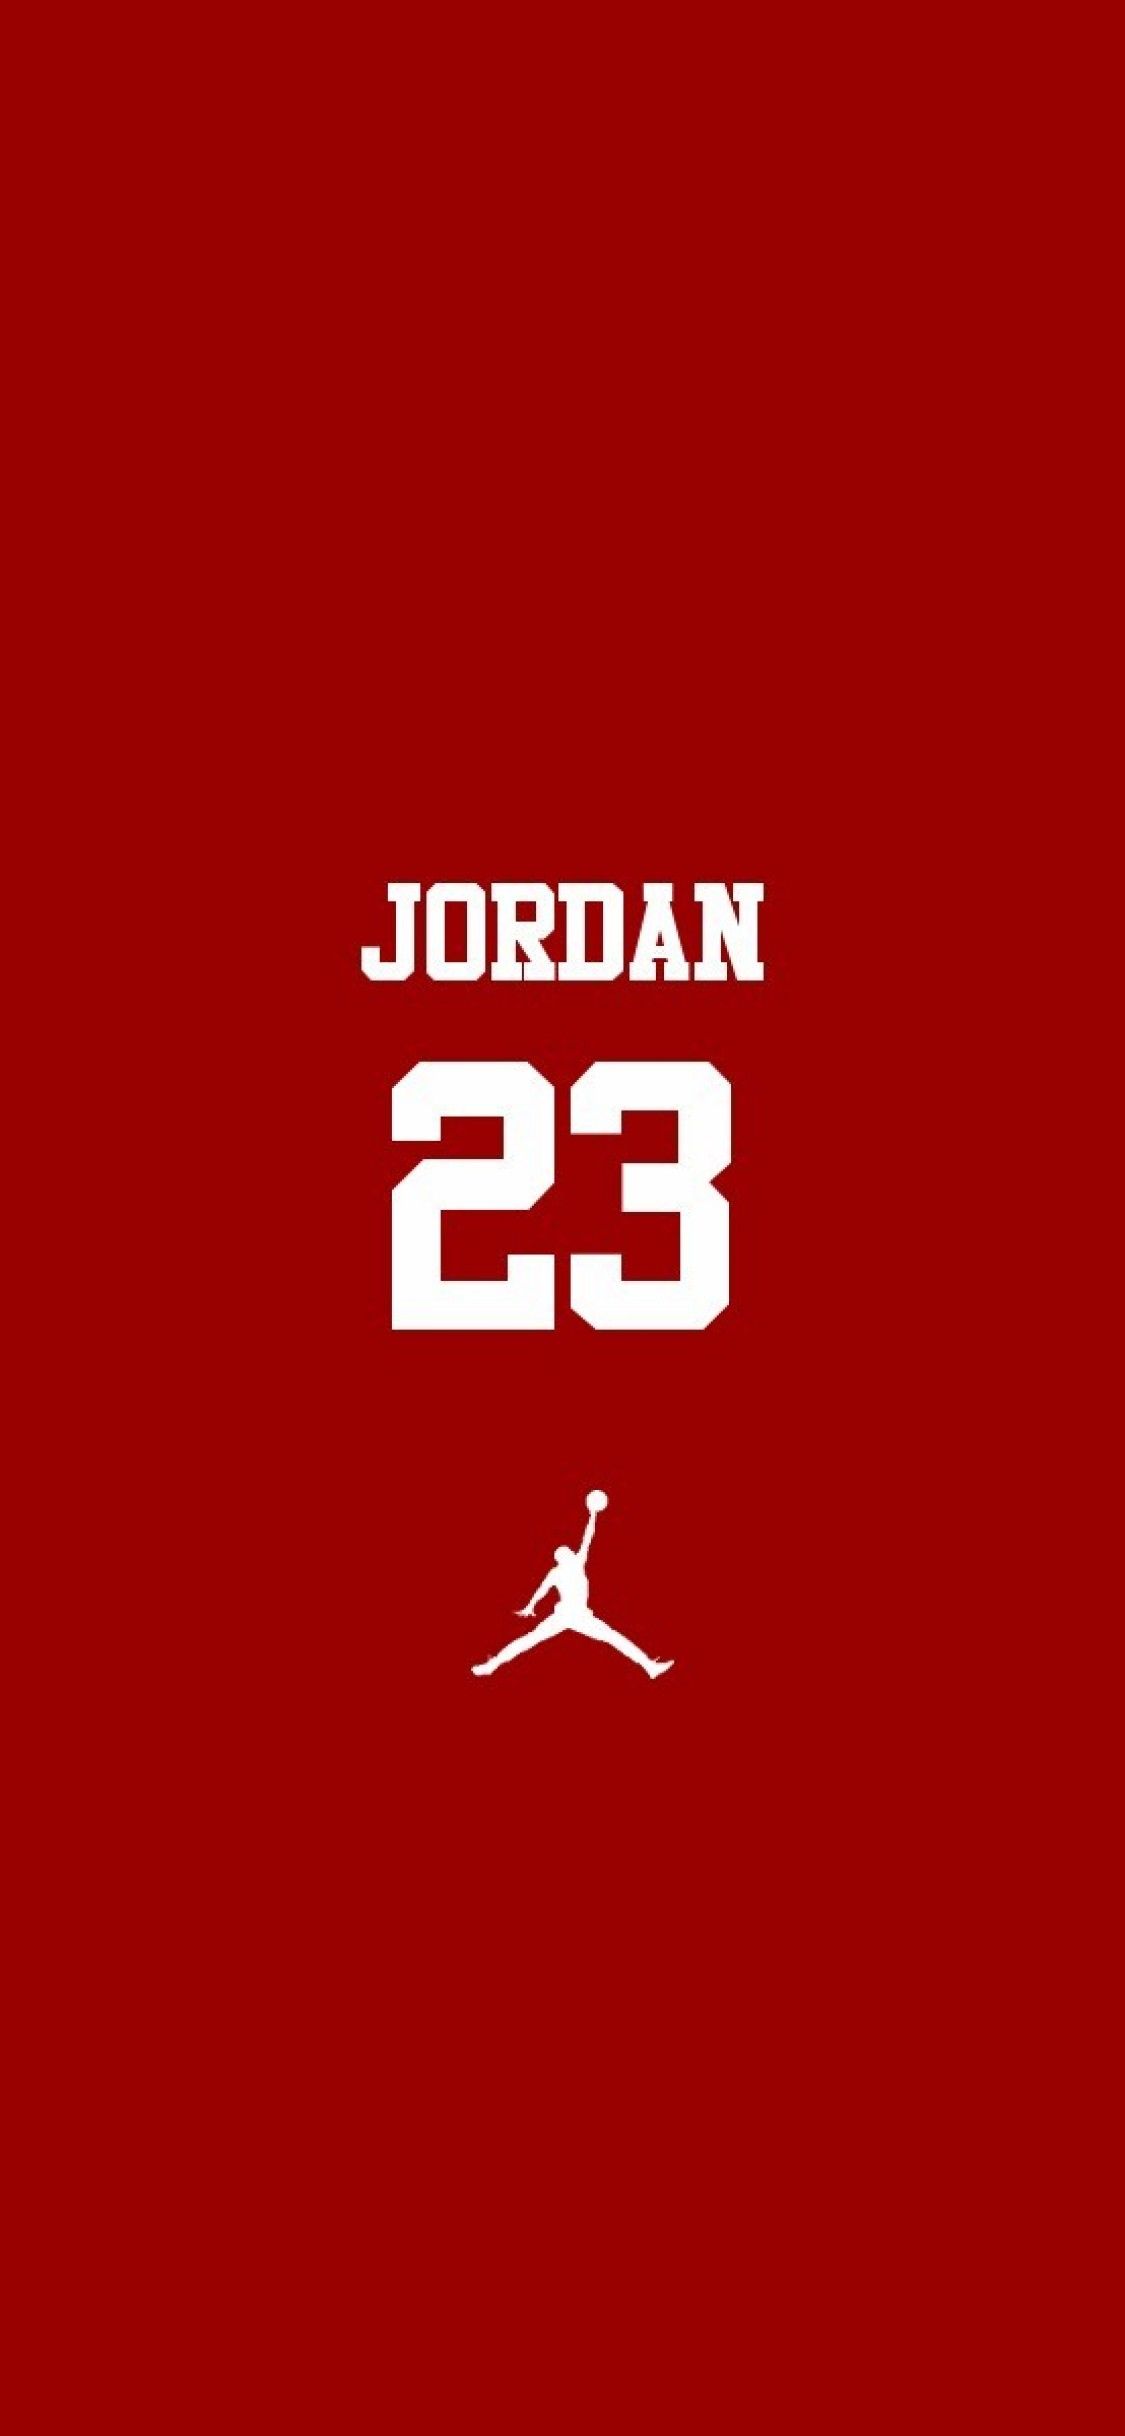 Michael Jordan iPhone X Wallpapers Download